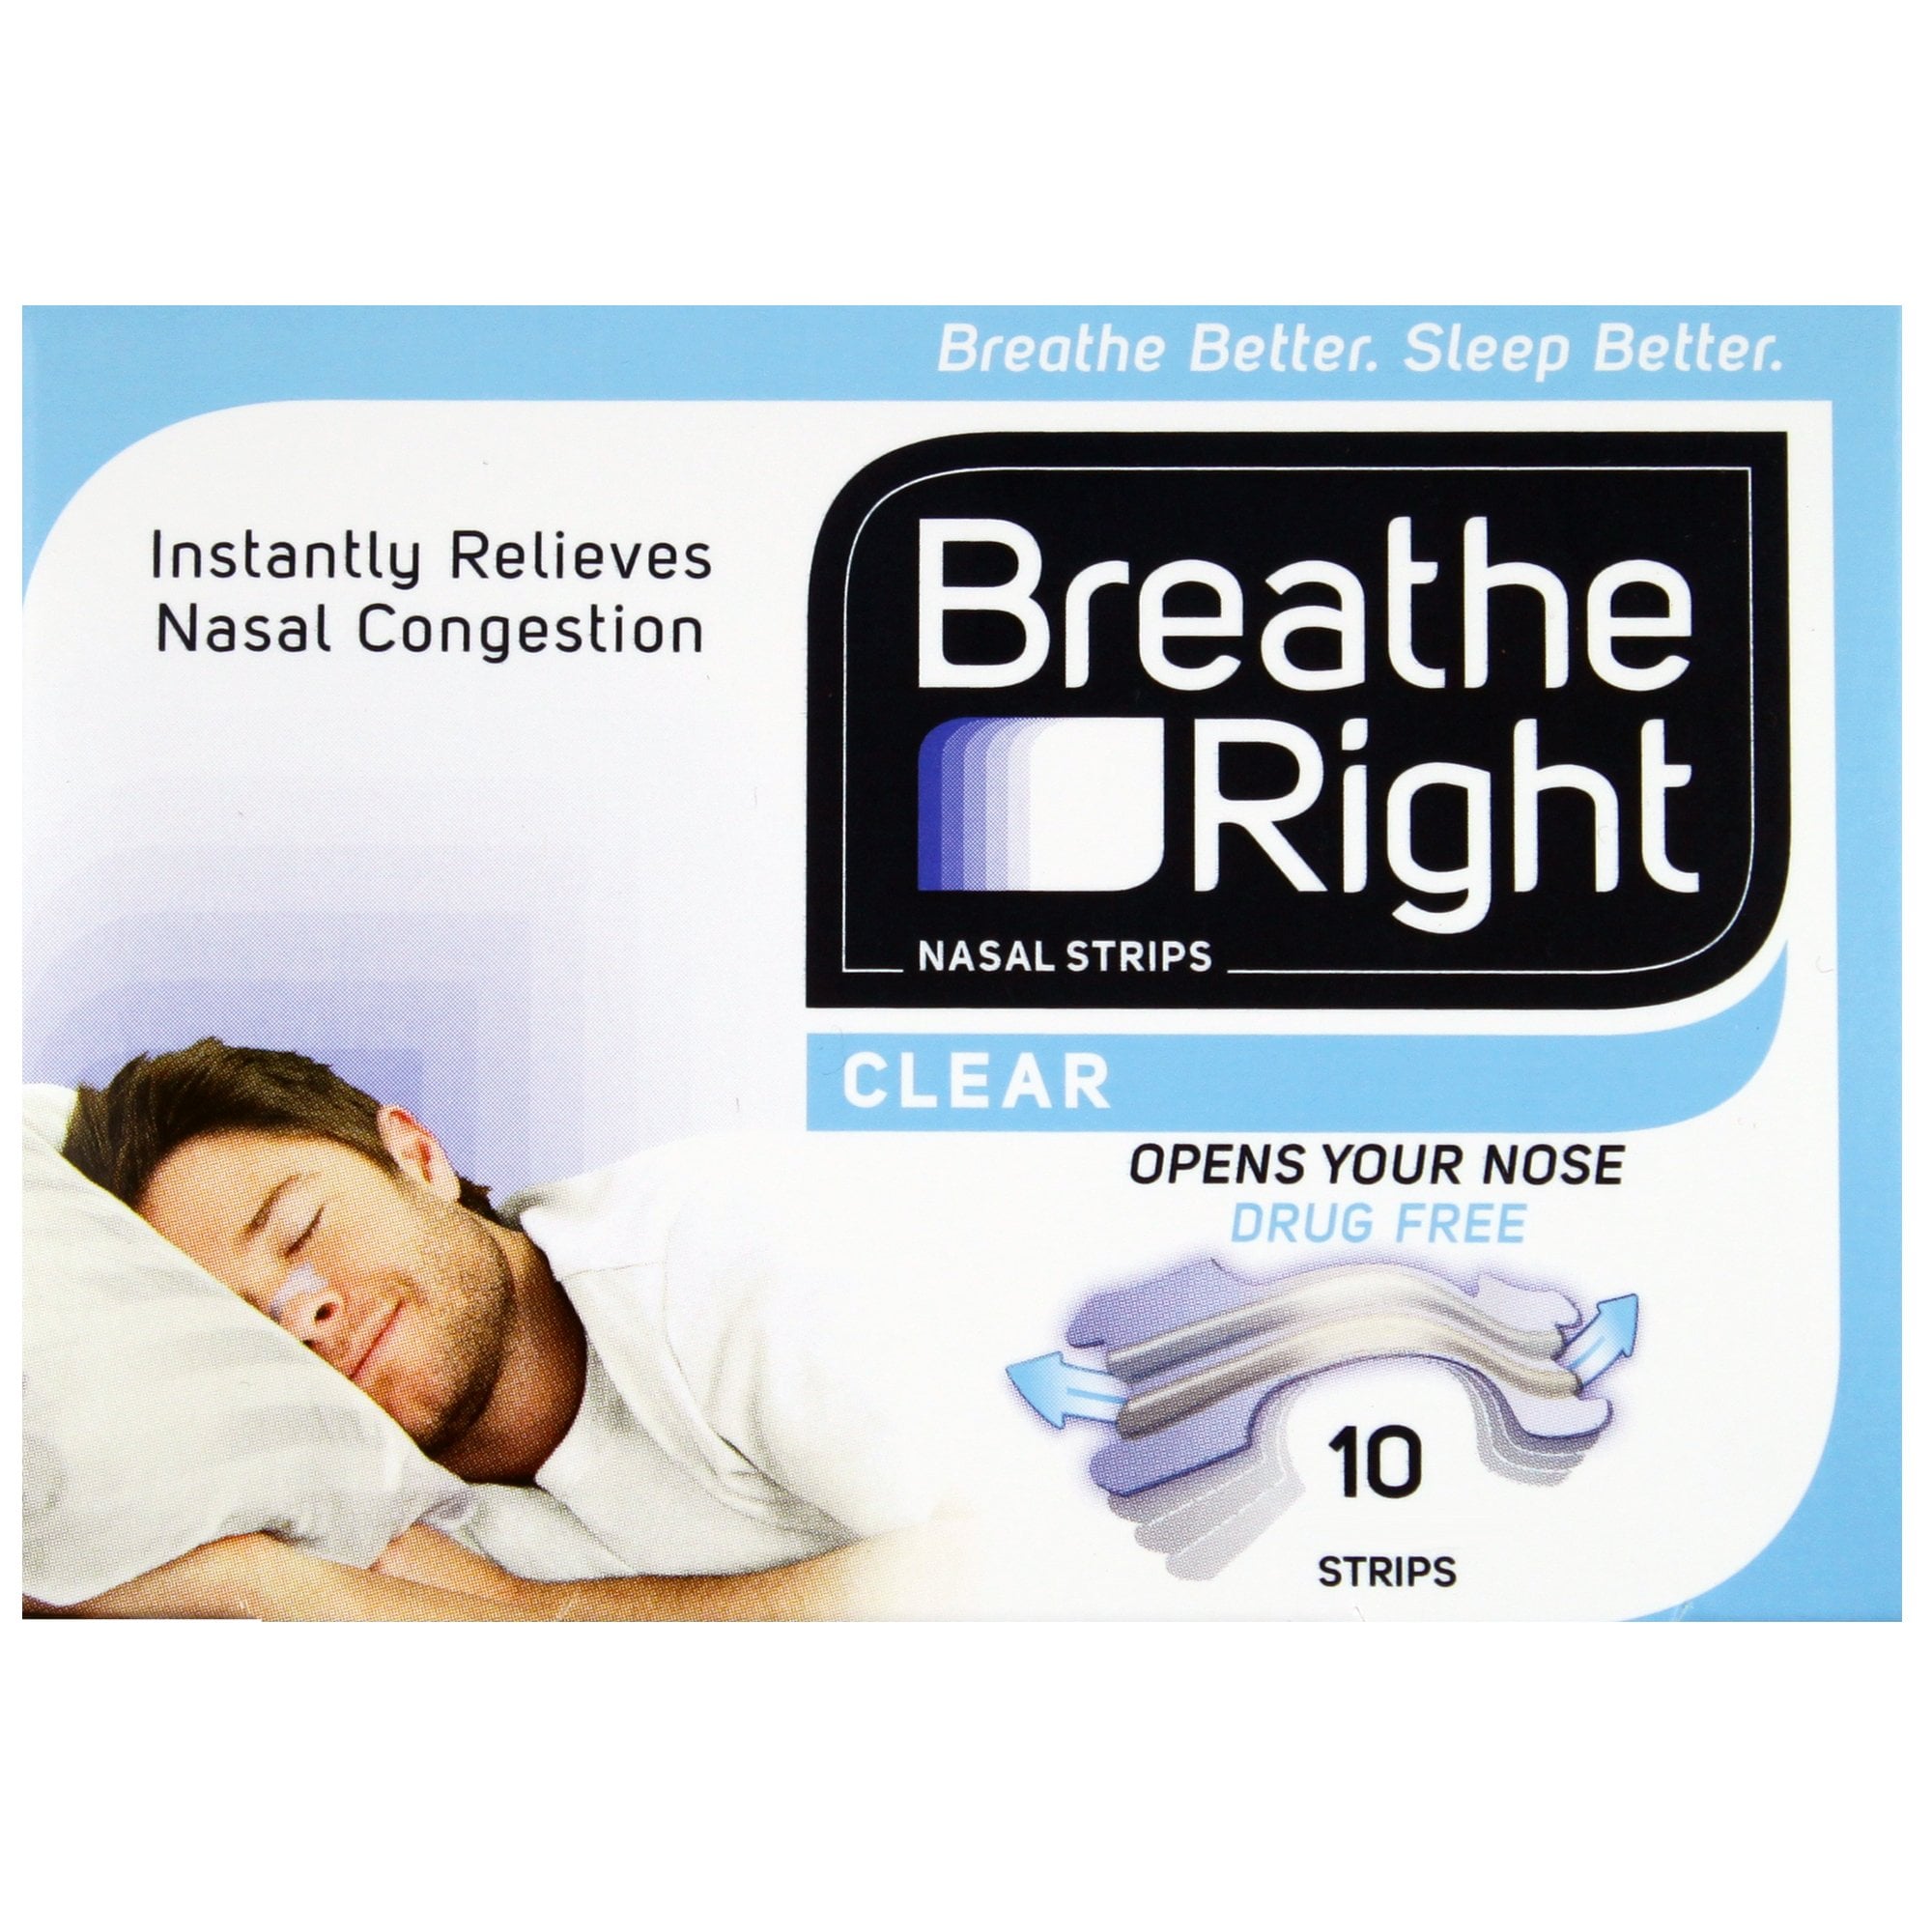 Tiras nasales Breathe Right vs. Dilatador nasal - Noson